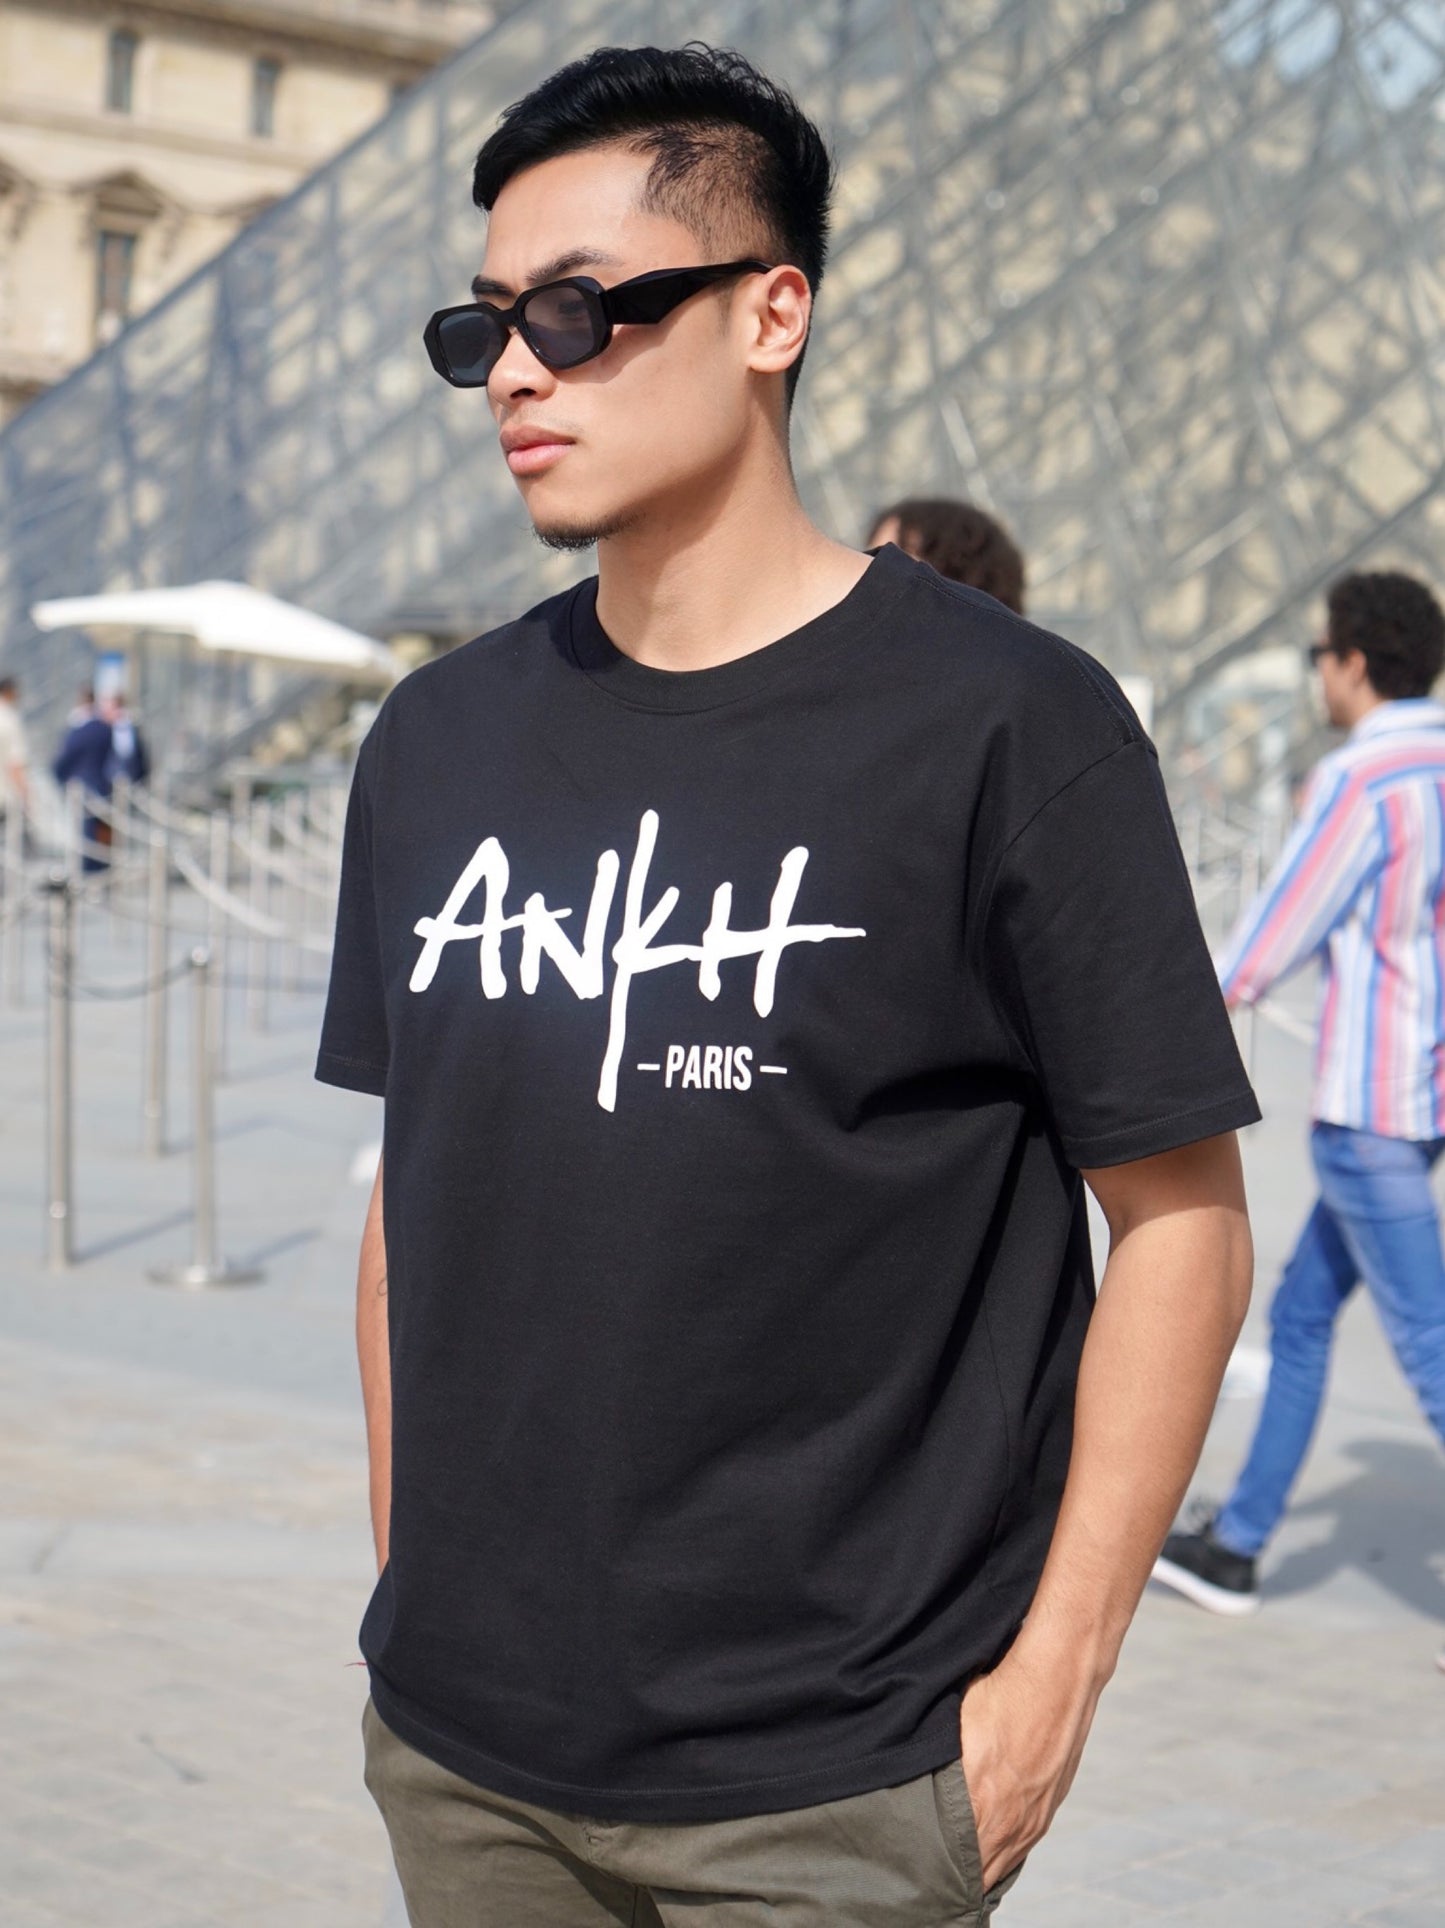 T-shirt Collection "ANKH PARIS"